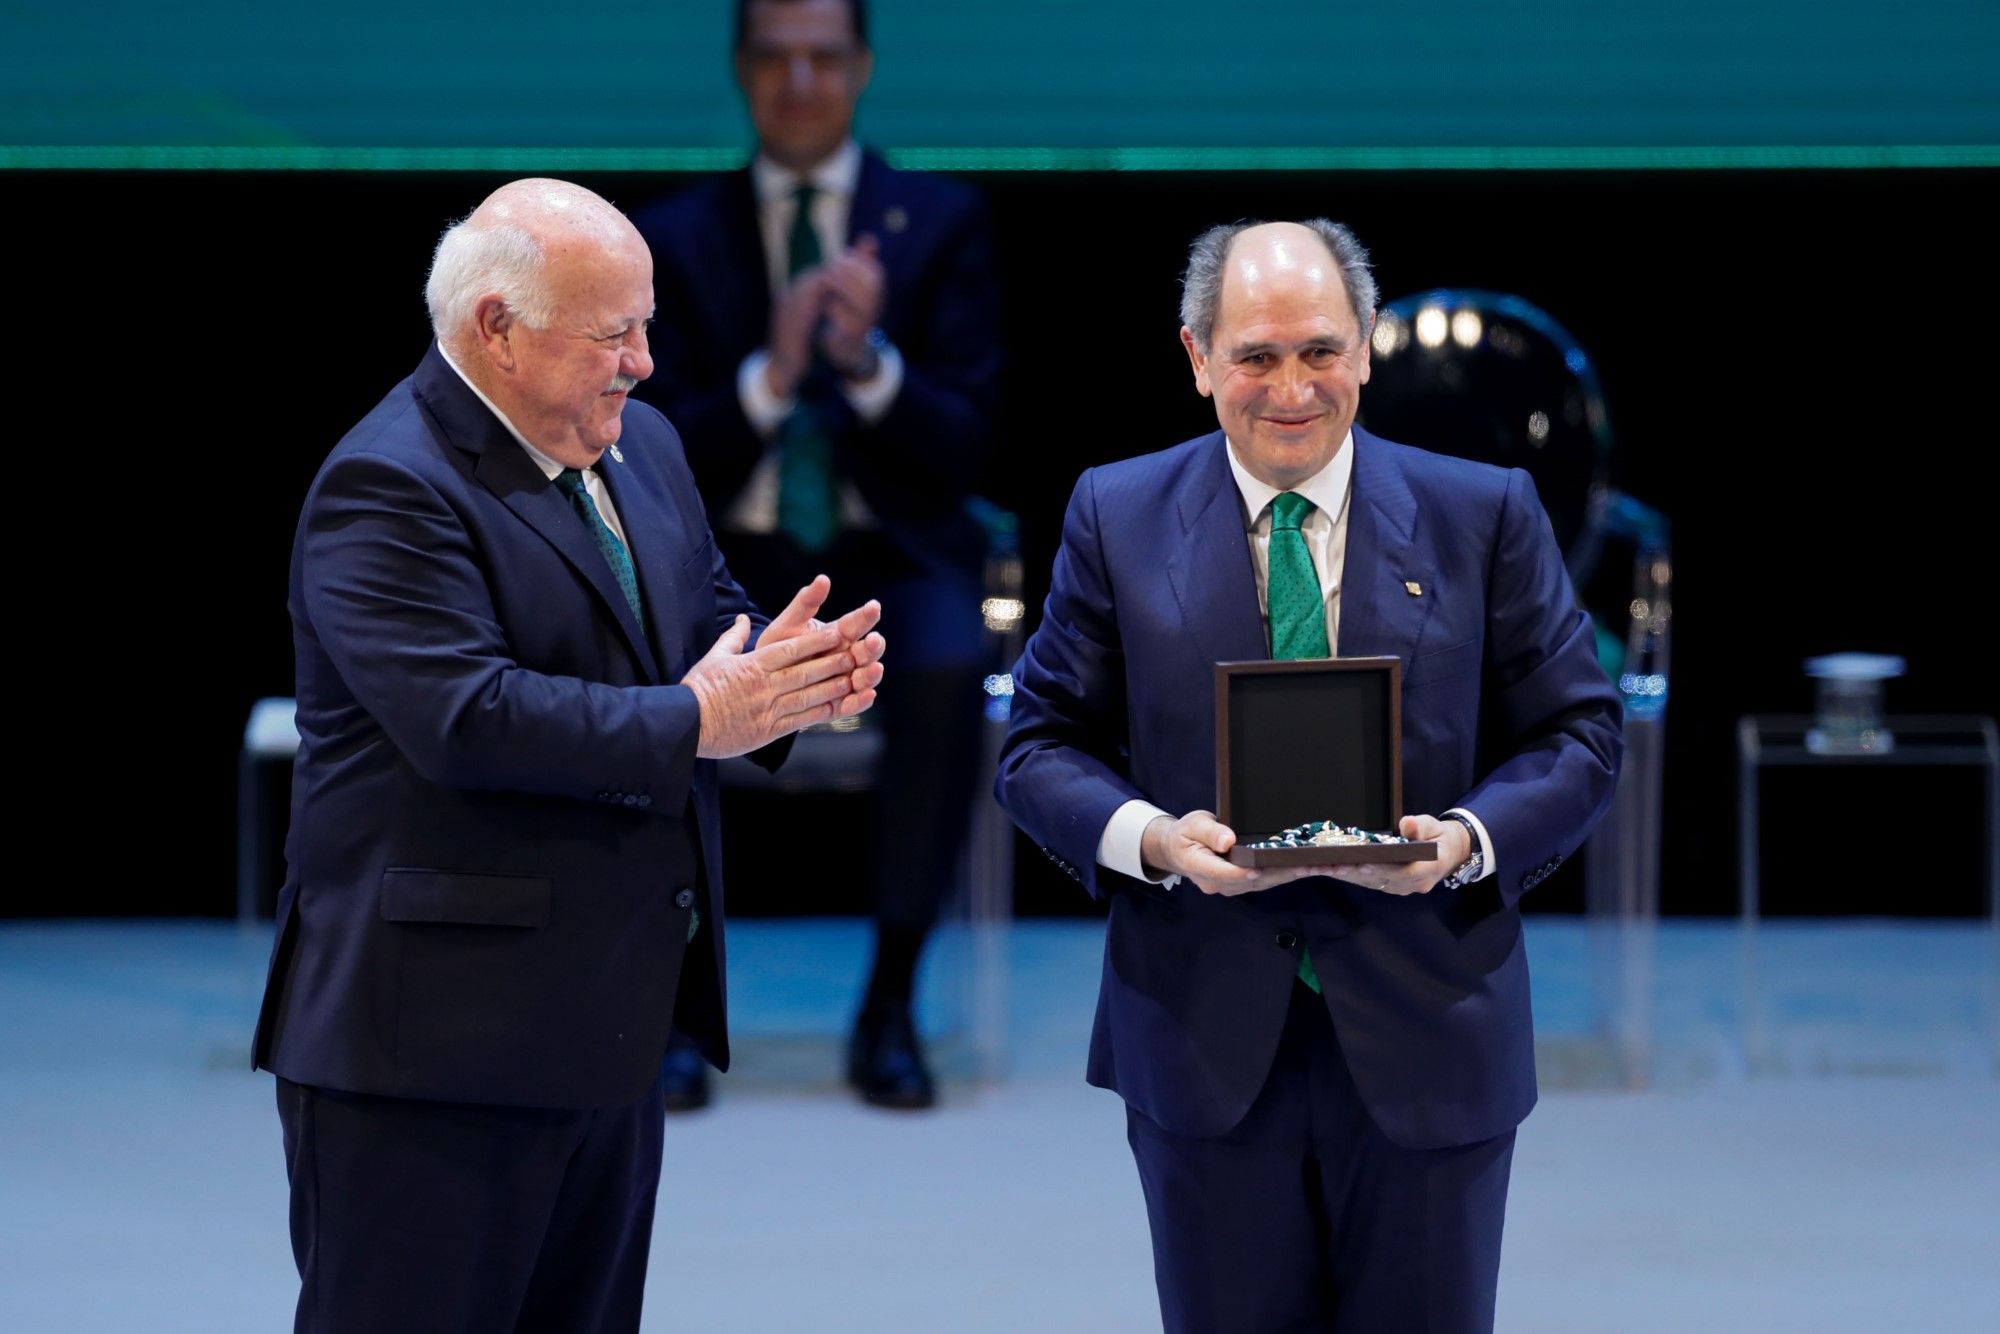 La gala del 28-F y la entrega de Medallas de Andalucía, en imágenes